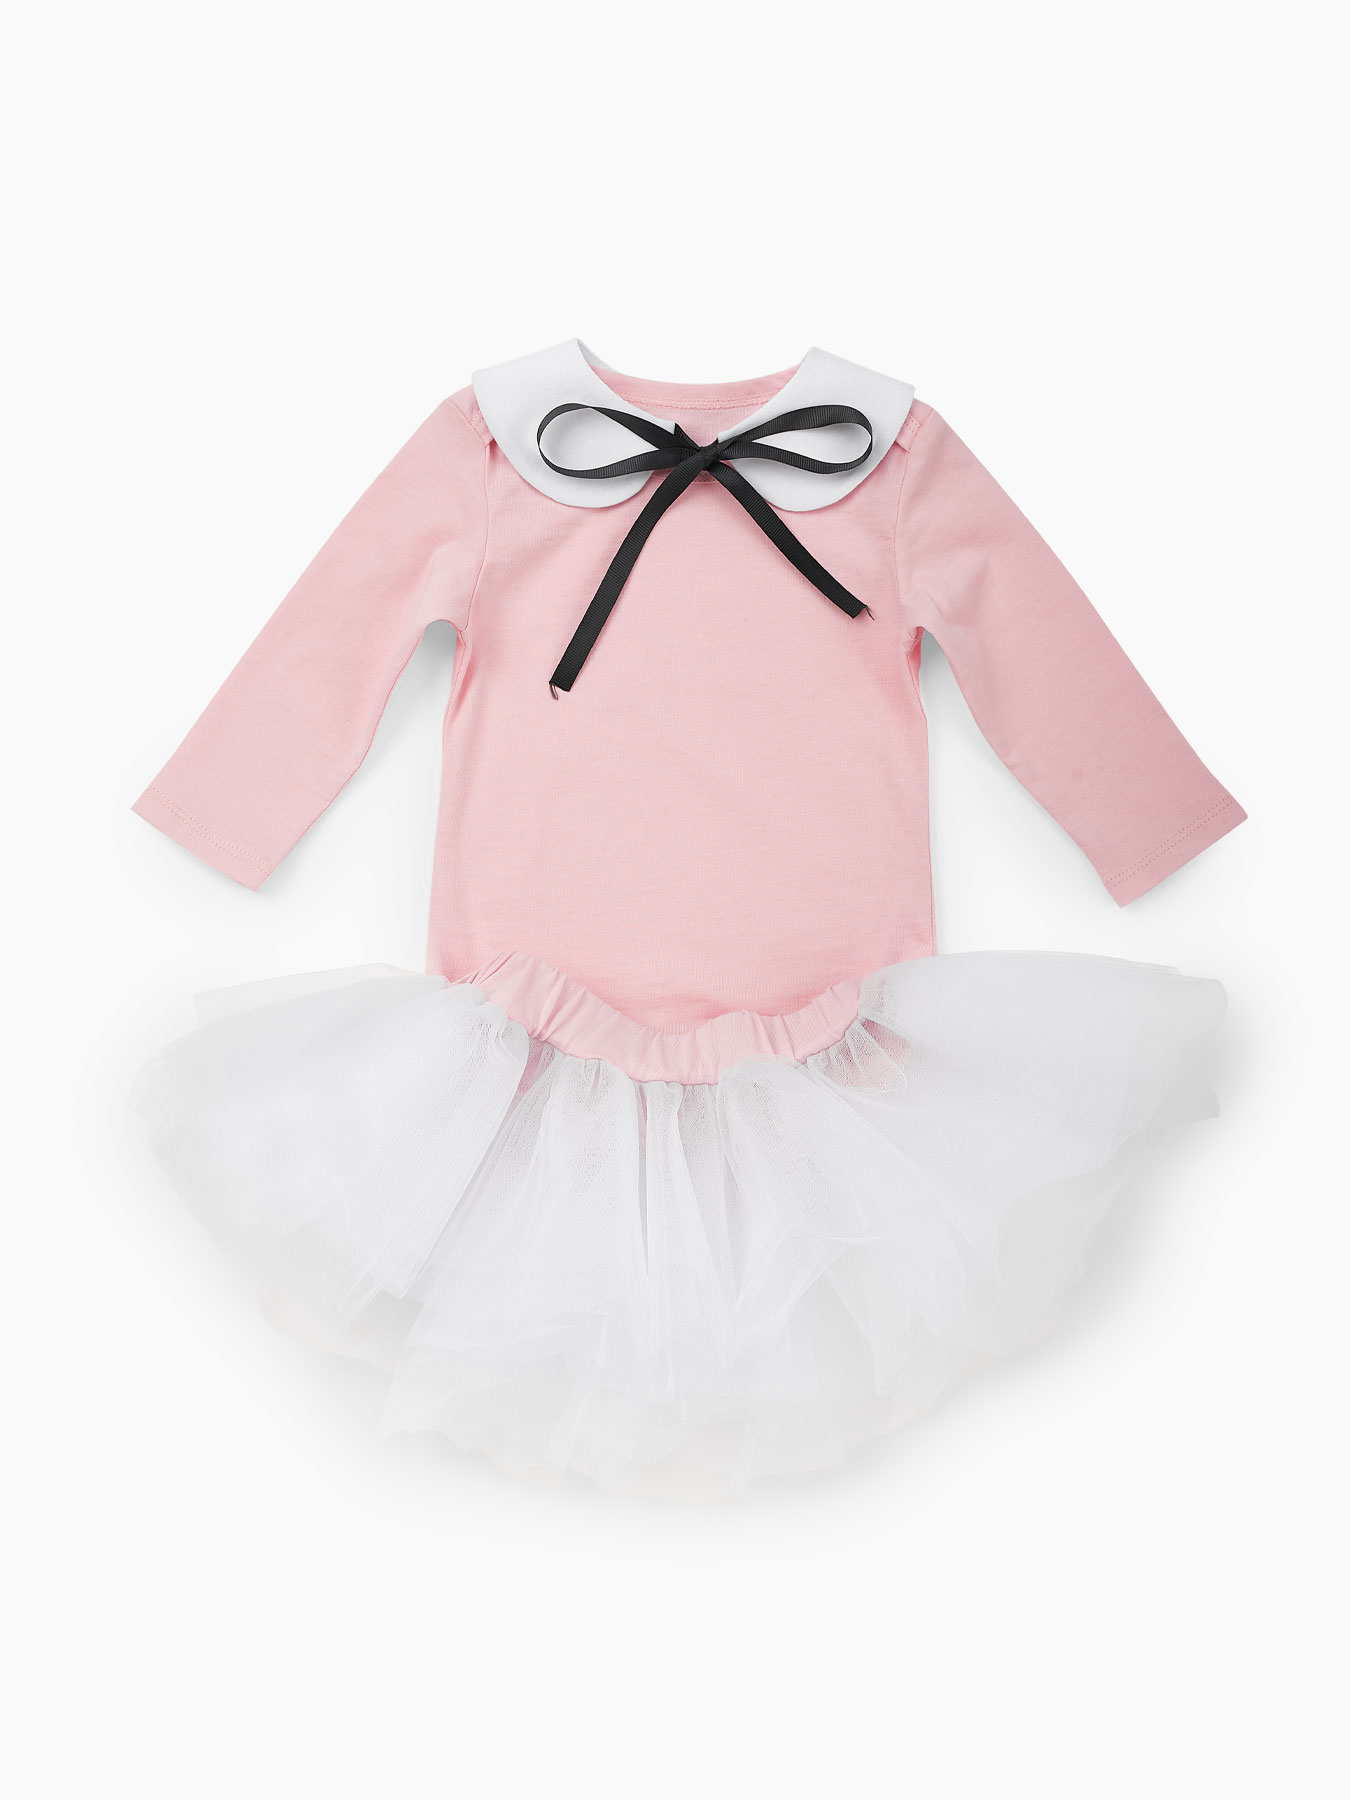 фото Комплект для девочек: боди, леггинсы и юбка happy baby розовый, белый 80